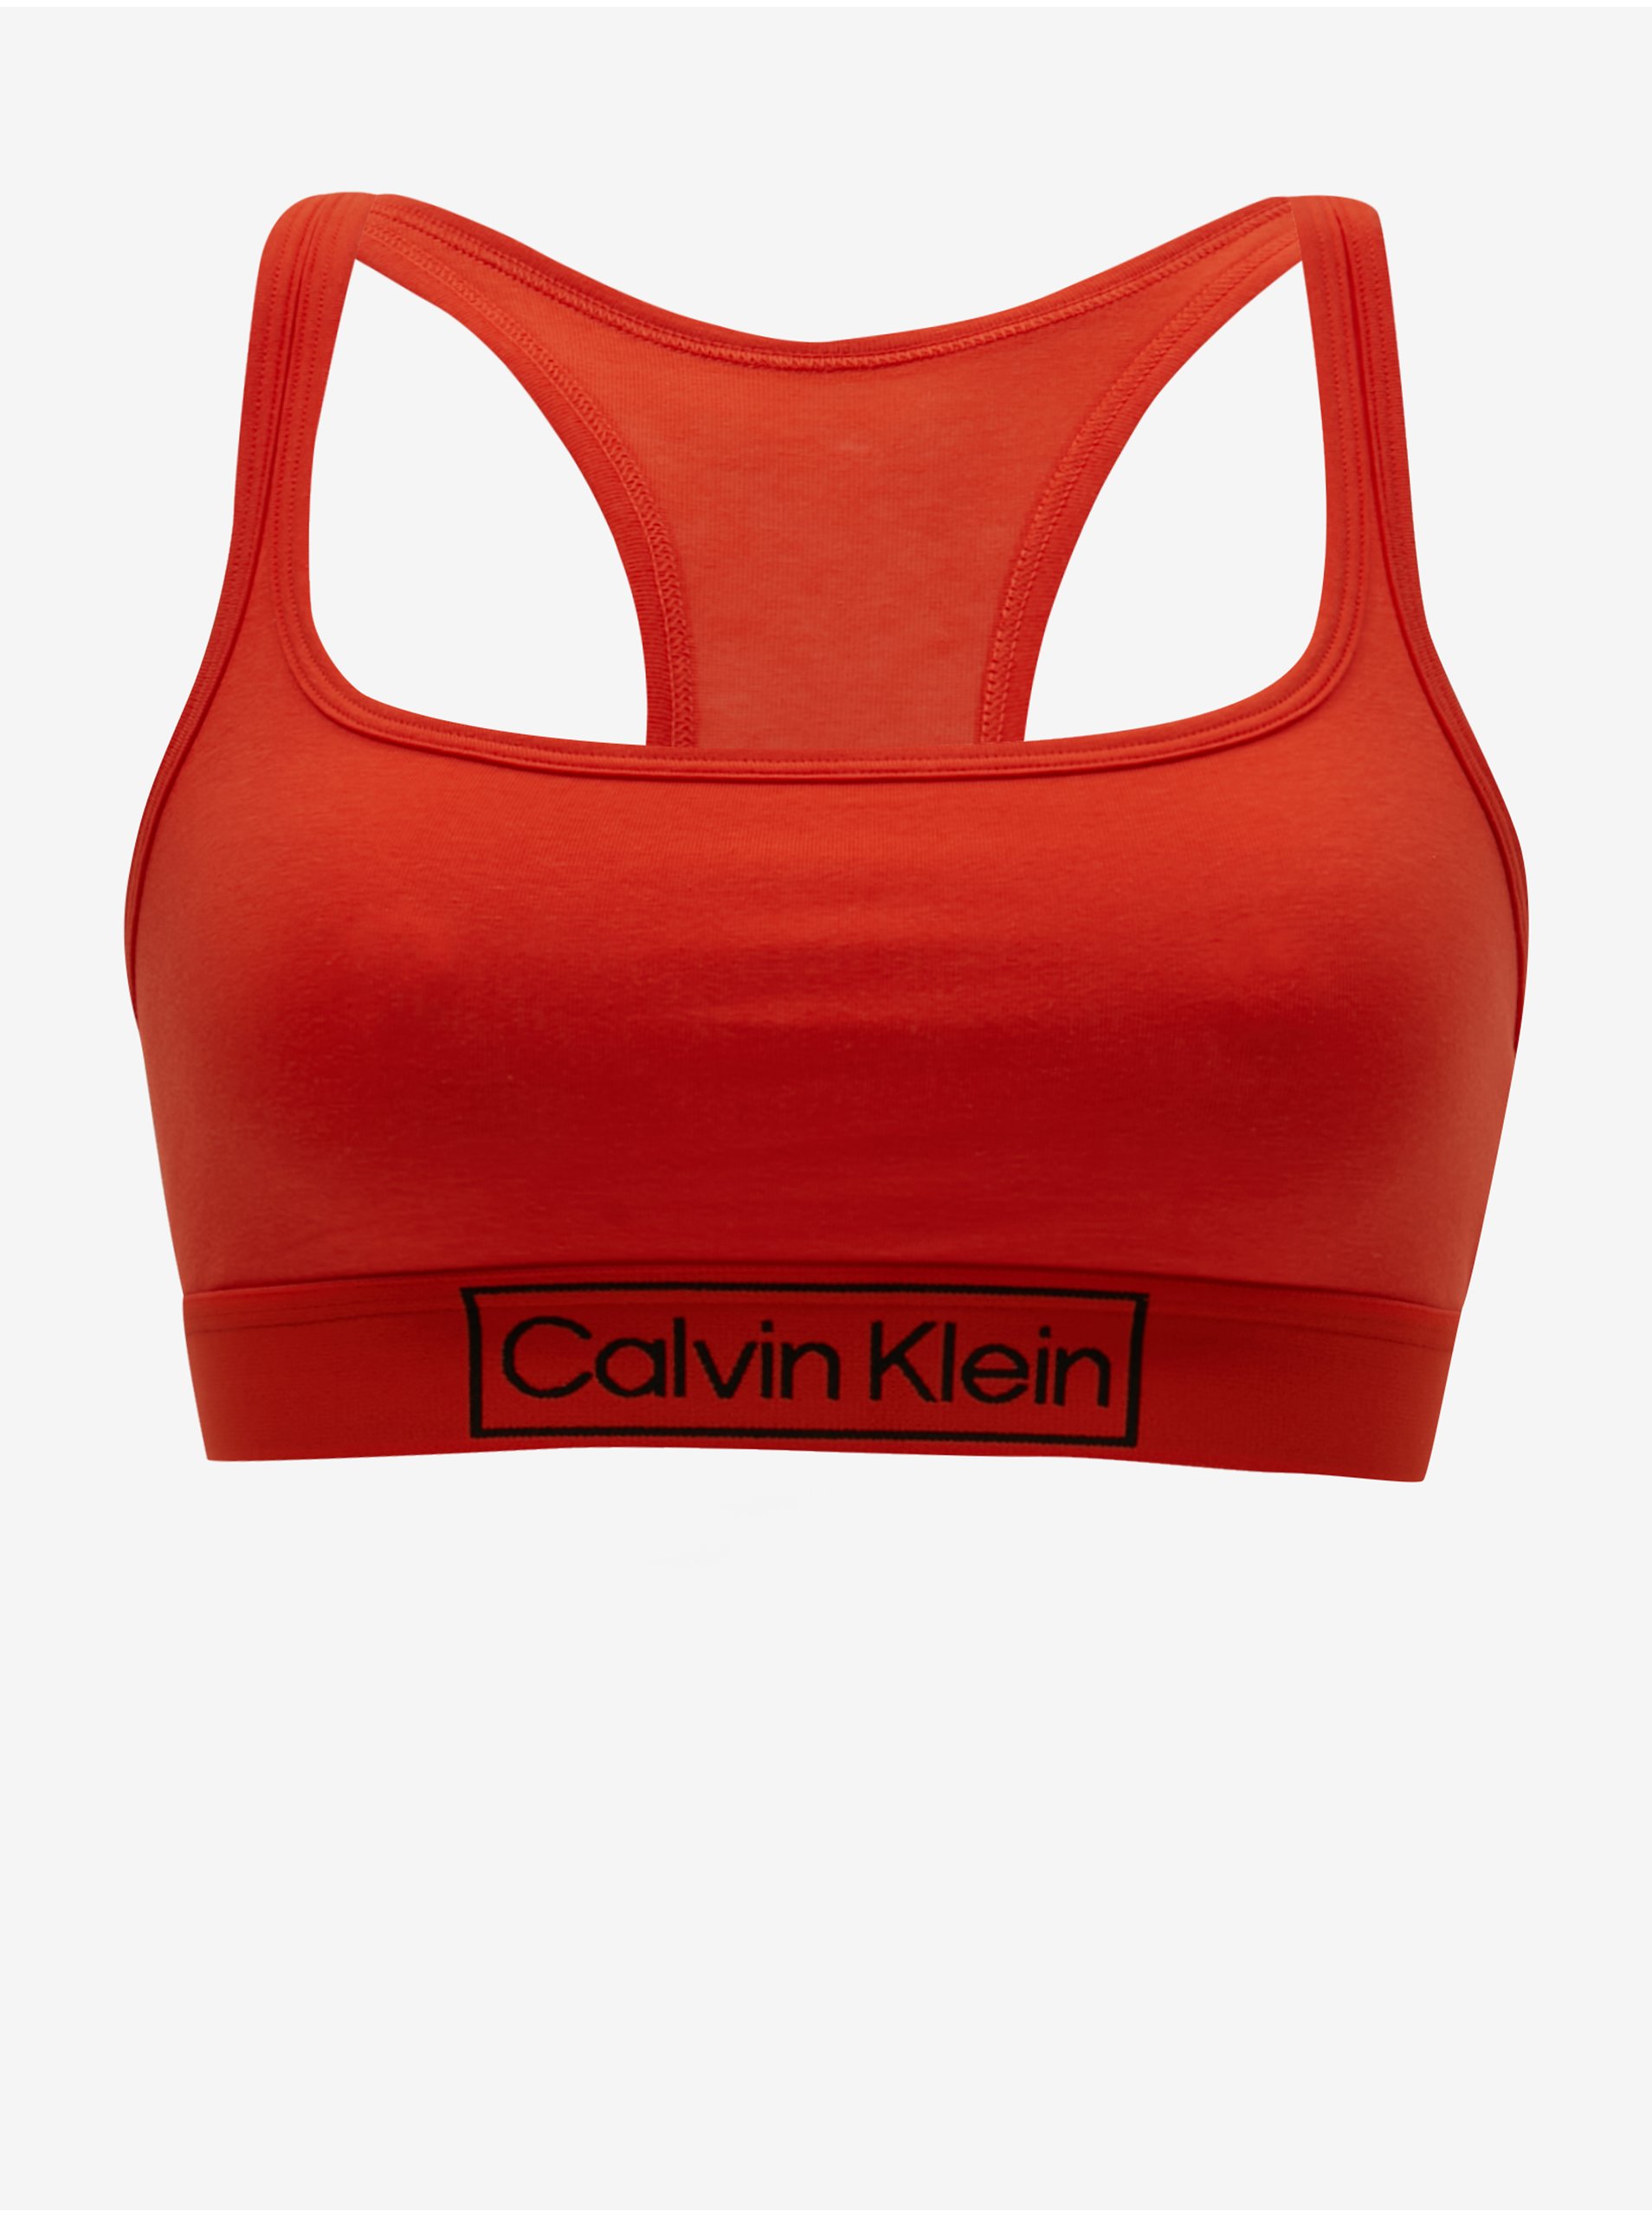 Calvin Klein Underwear Reimagined Heritage Brick Women's Bra - Women